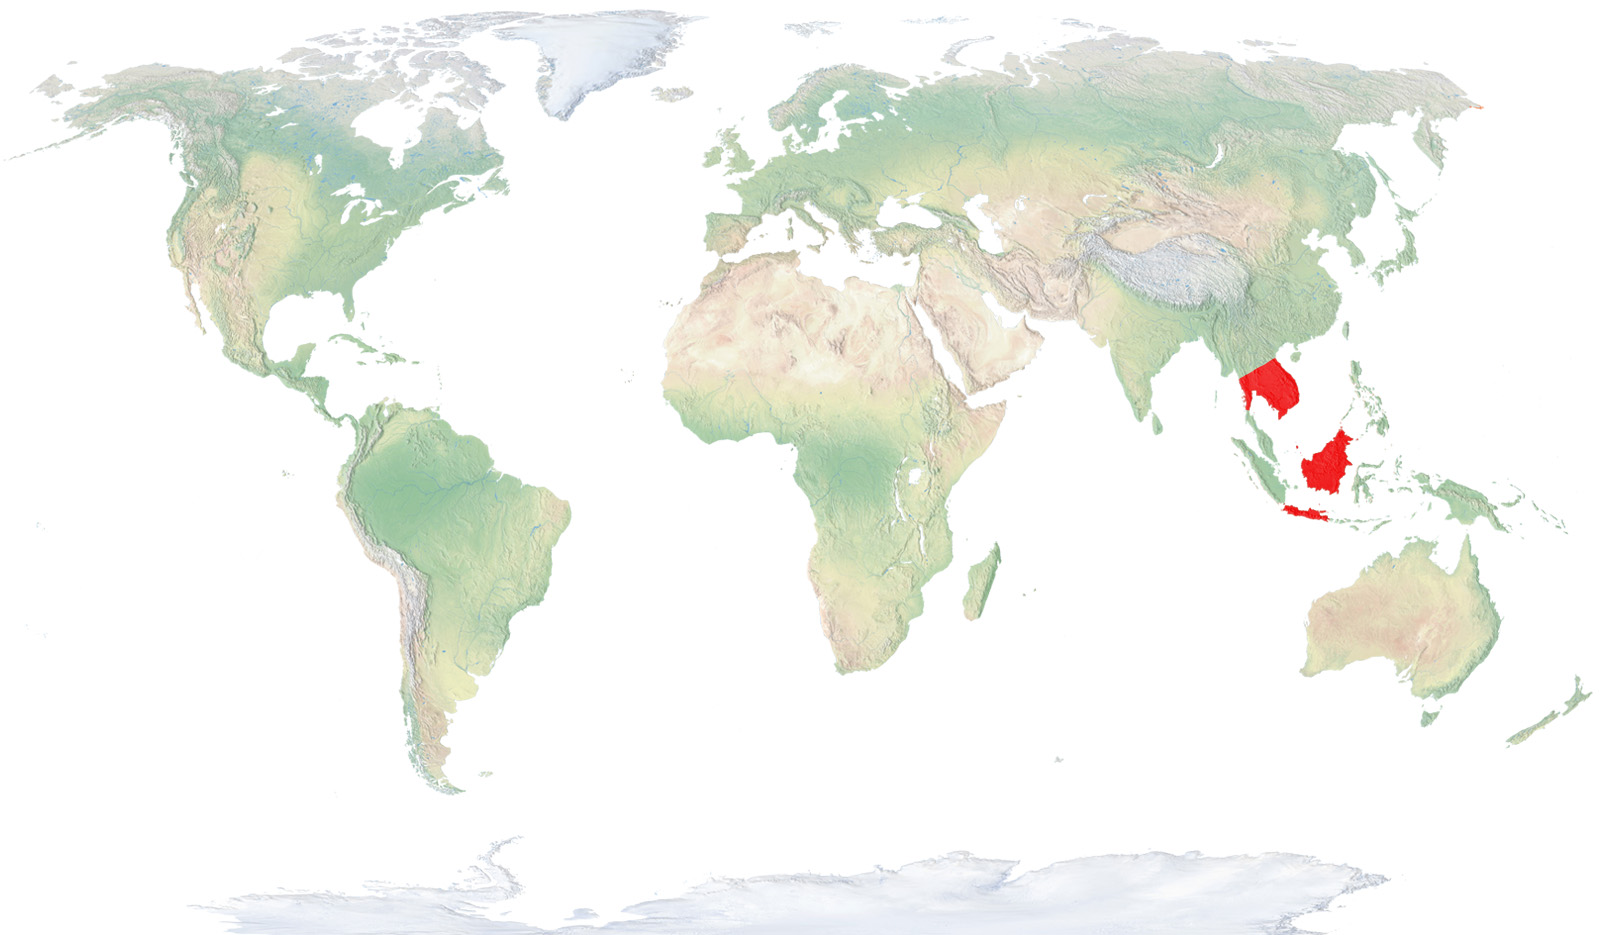 Tailandia, Laos, Camboya, Vietnam, Malasia y algunas islas de Indonesia como Java y Borneo